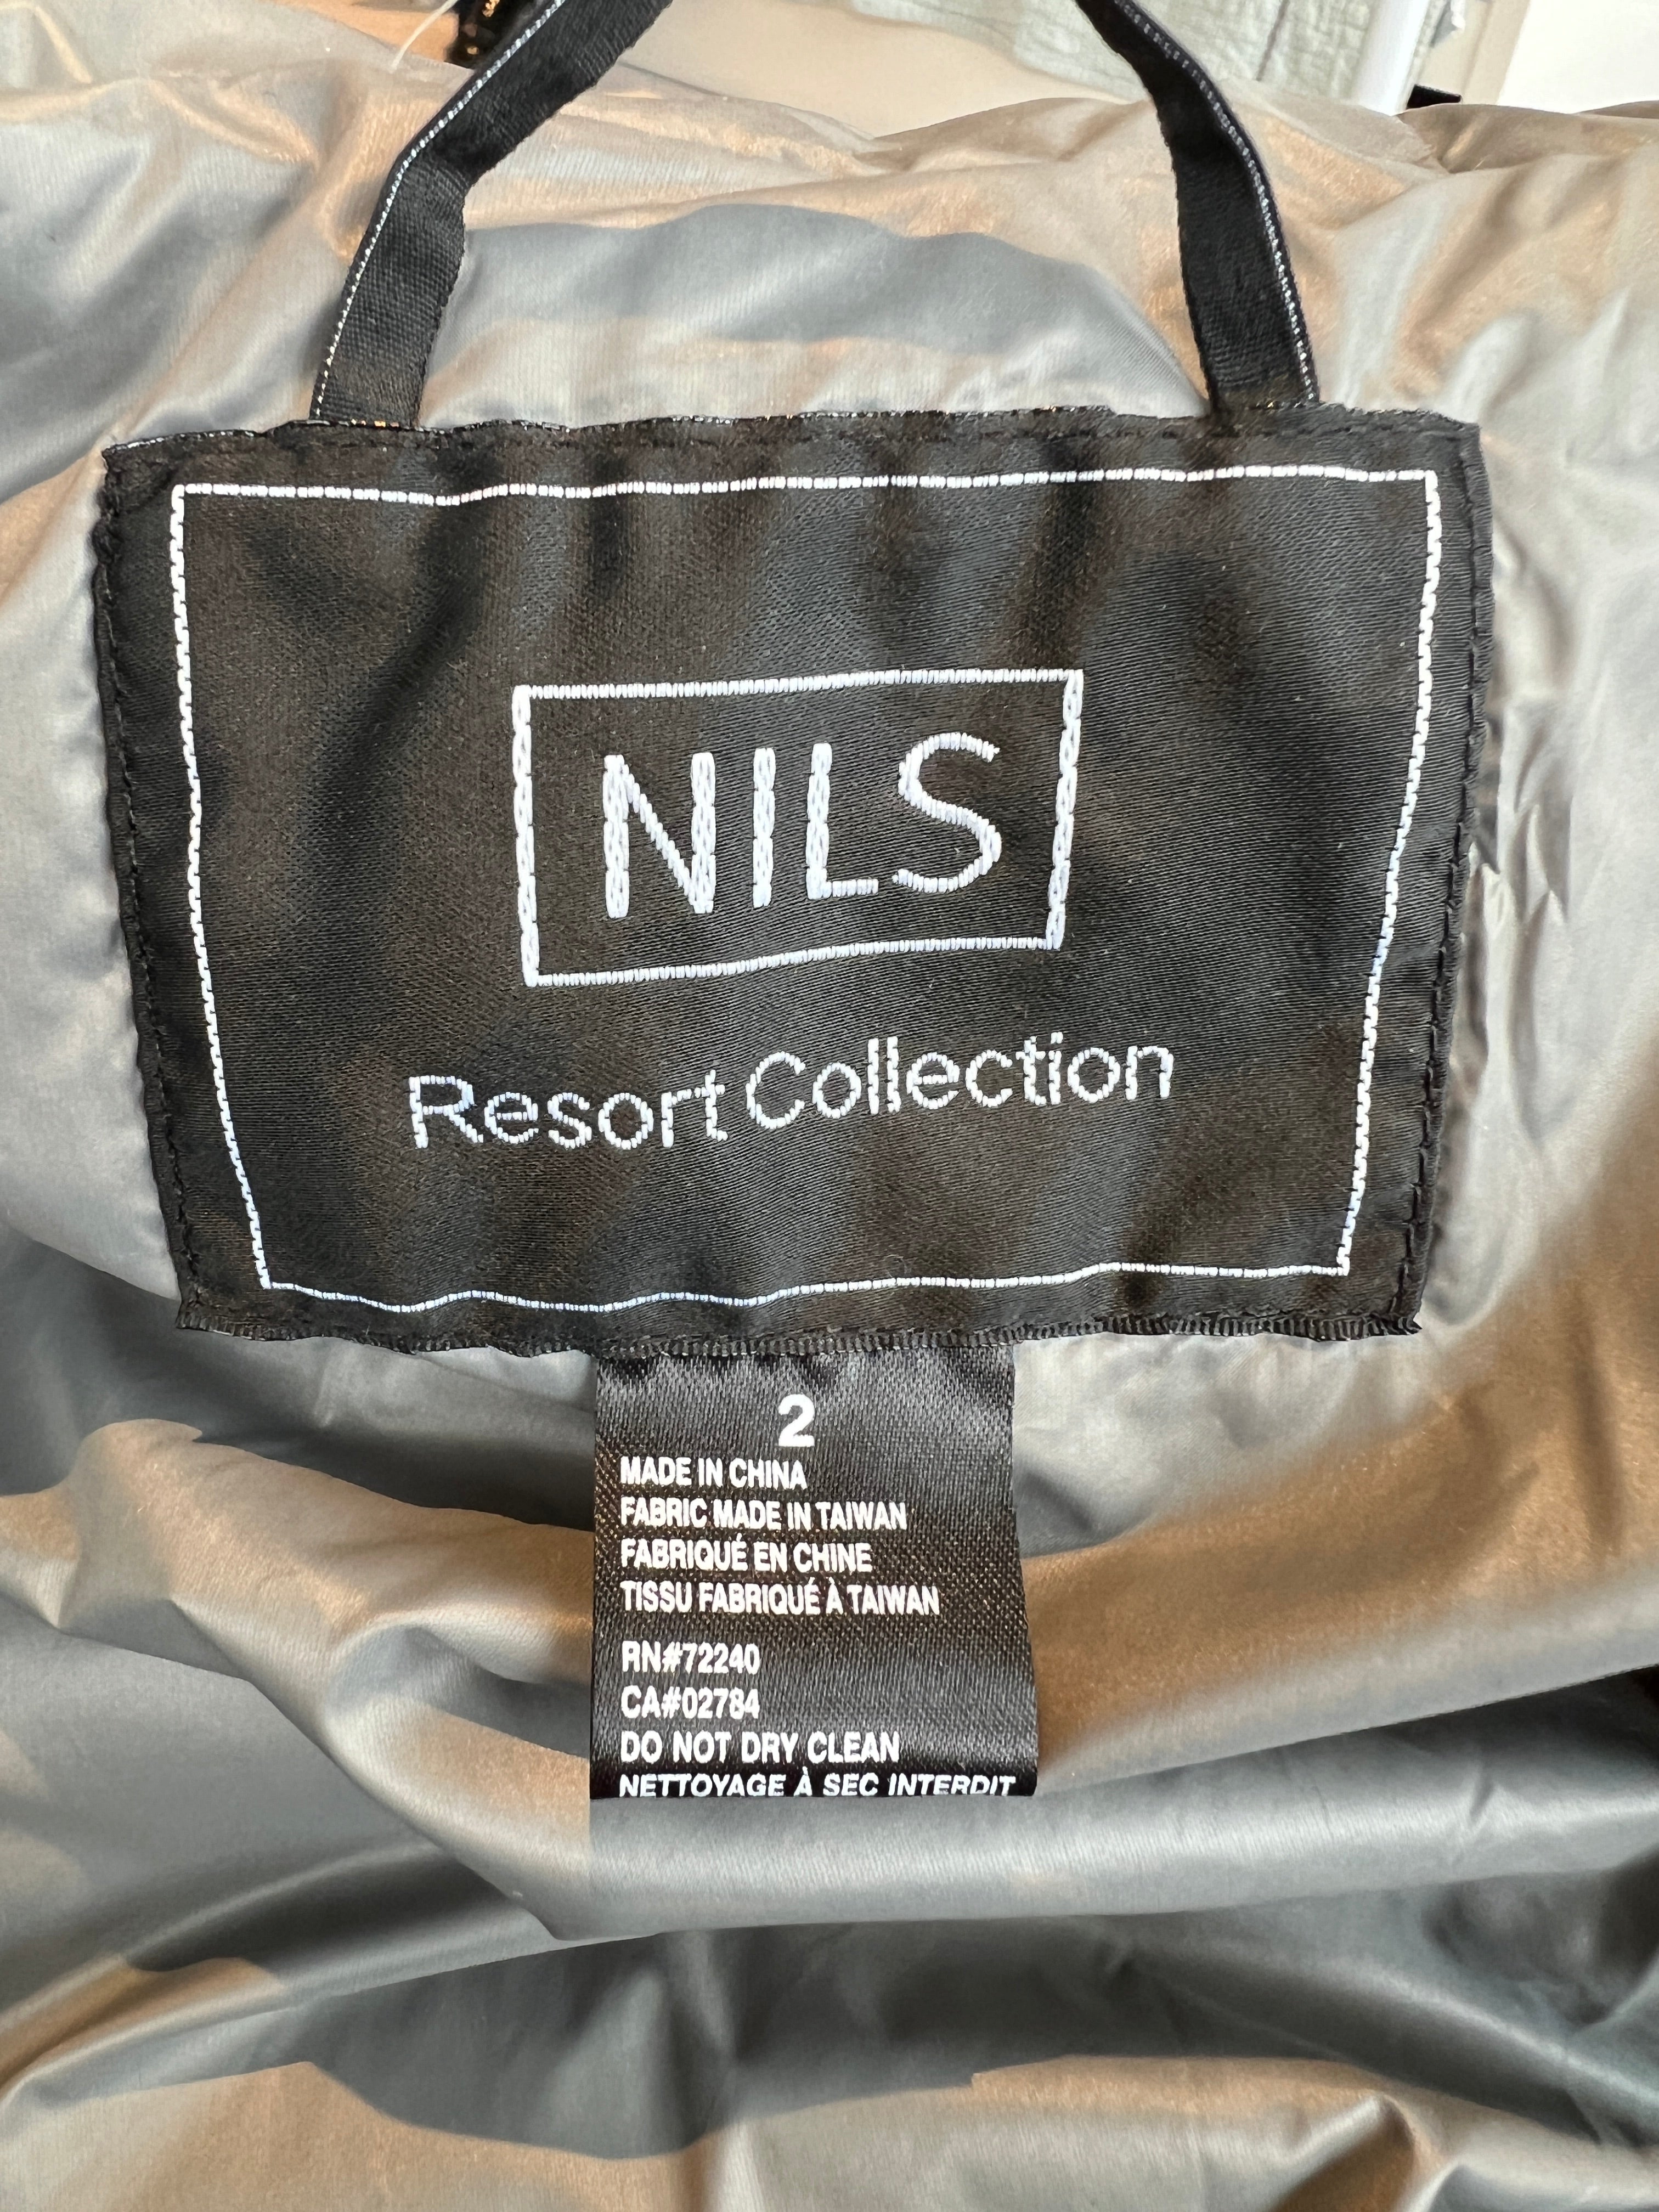 Nils Resort Collection Jordan Long Grey Puffer Coat, 2